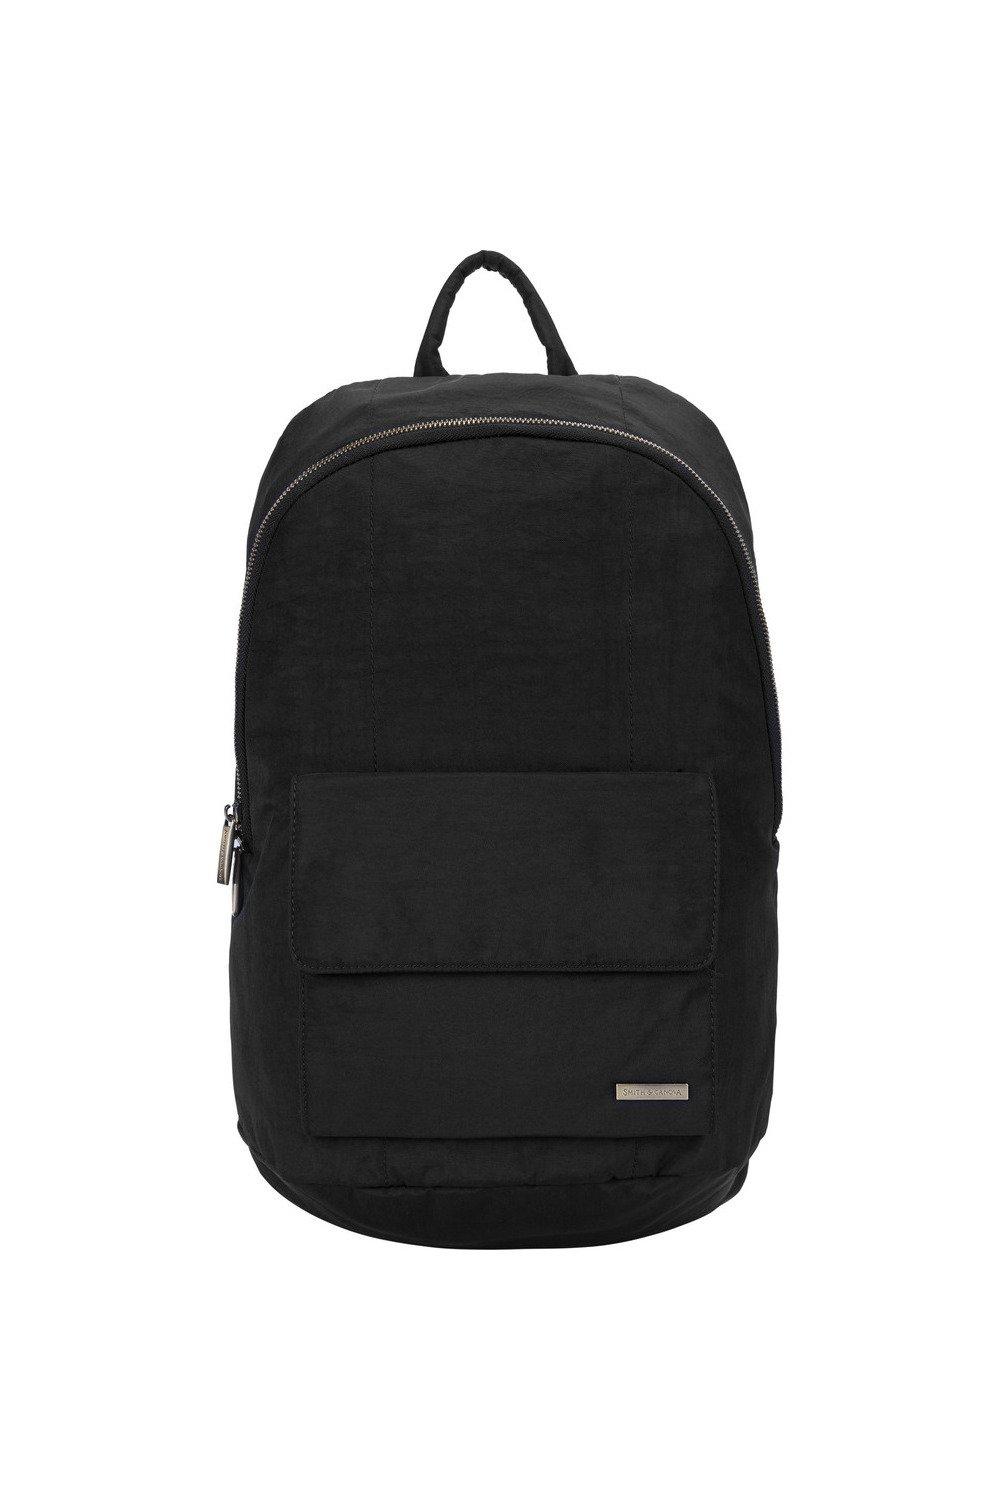 Нейлоновый рюкзак на молнии Smith and Canova, черный сумка для ноутбука 11 13 дюймов шерстяной фетровый чехол для ноутбука чехол для macbook портфель чехол для ноутбука чехол для huawei matebook сумка д